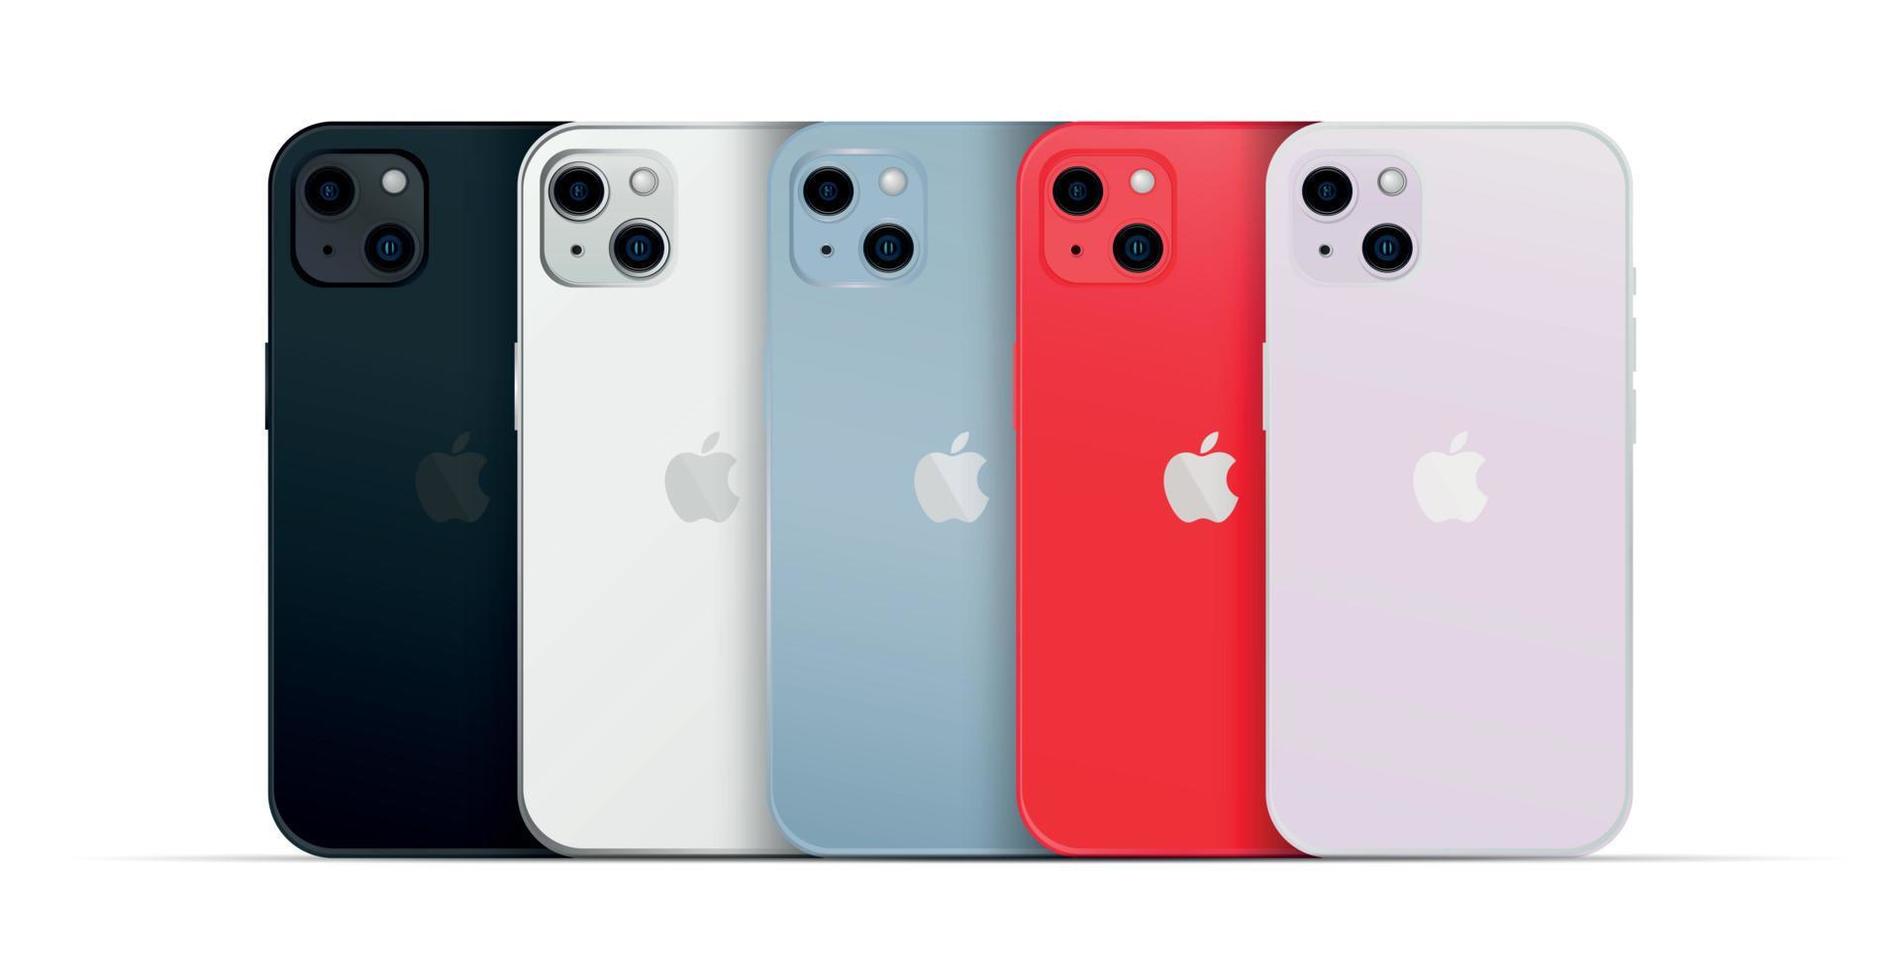 novidade apple iphone 14, gadget de smartphone moderno, conjunto de 5 pcs novas cores originais - vetor